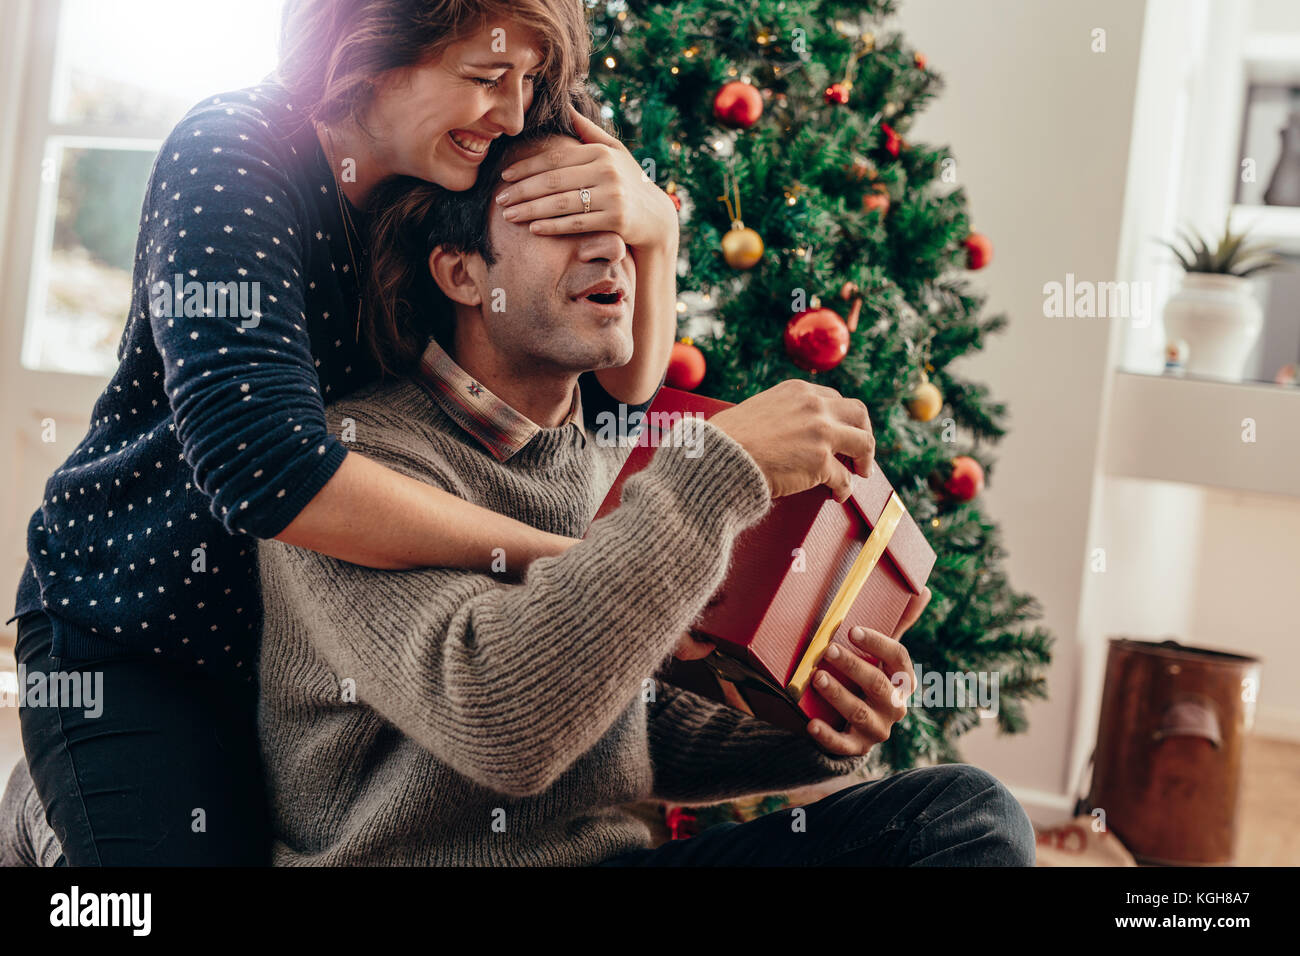 Ein paar glückliche Momente verbringen während Weihnachten zu Hause feiern. Lächelnden jungen Frau die Augen ihres Partners während über Weihnachten gif Übergabe Stockfoto